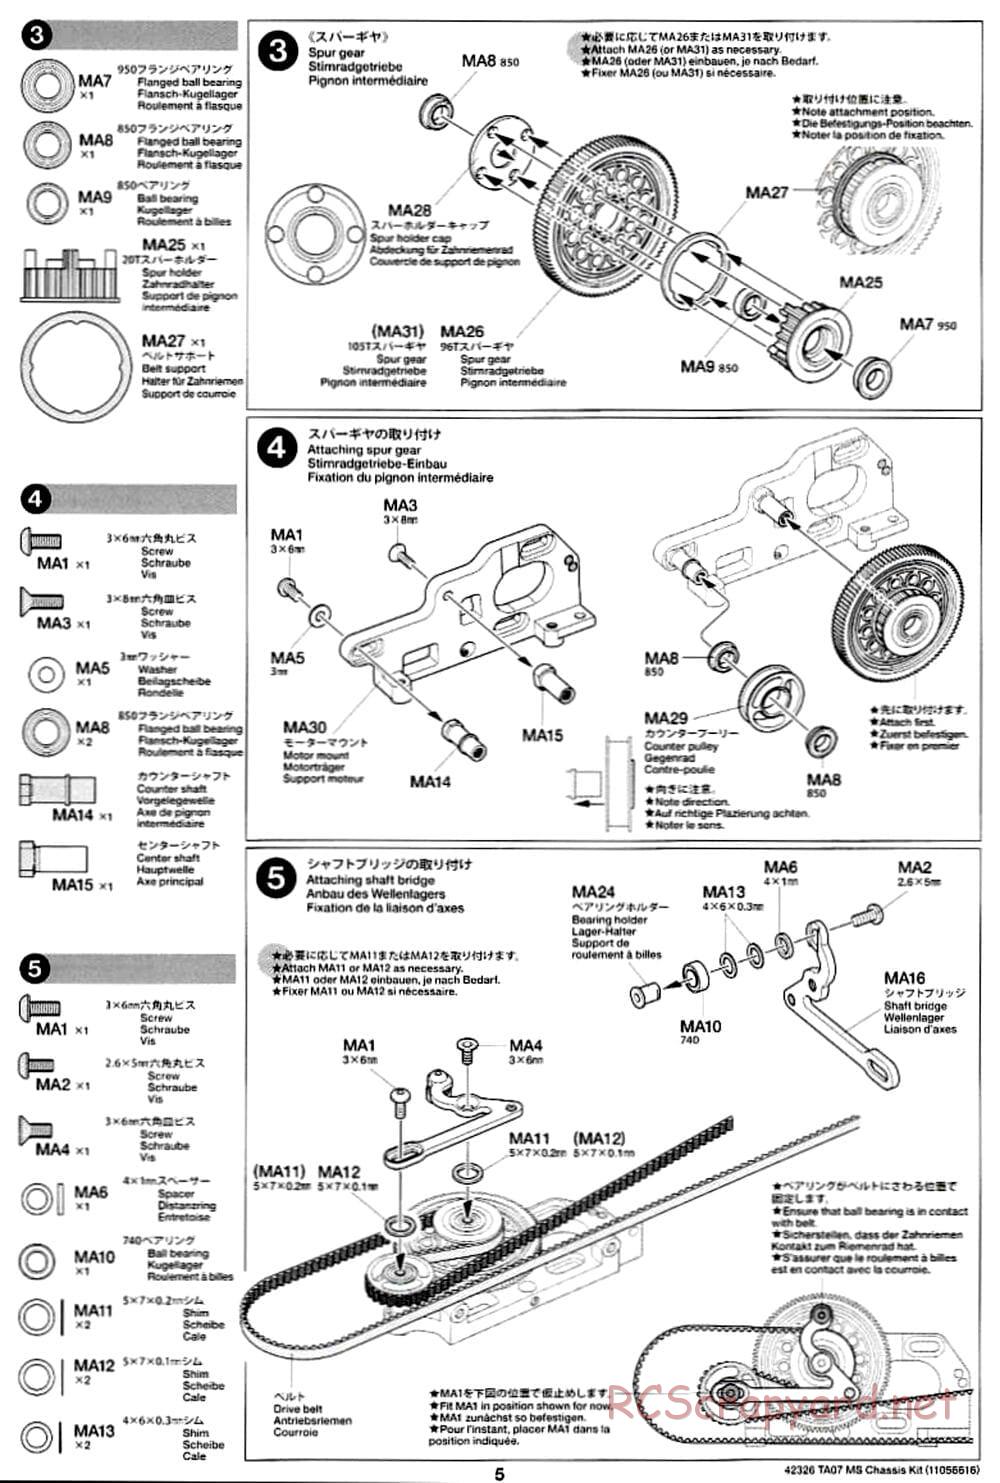 Tamiya - TA07 MS Chassis - Manual - Page 5